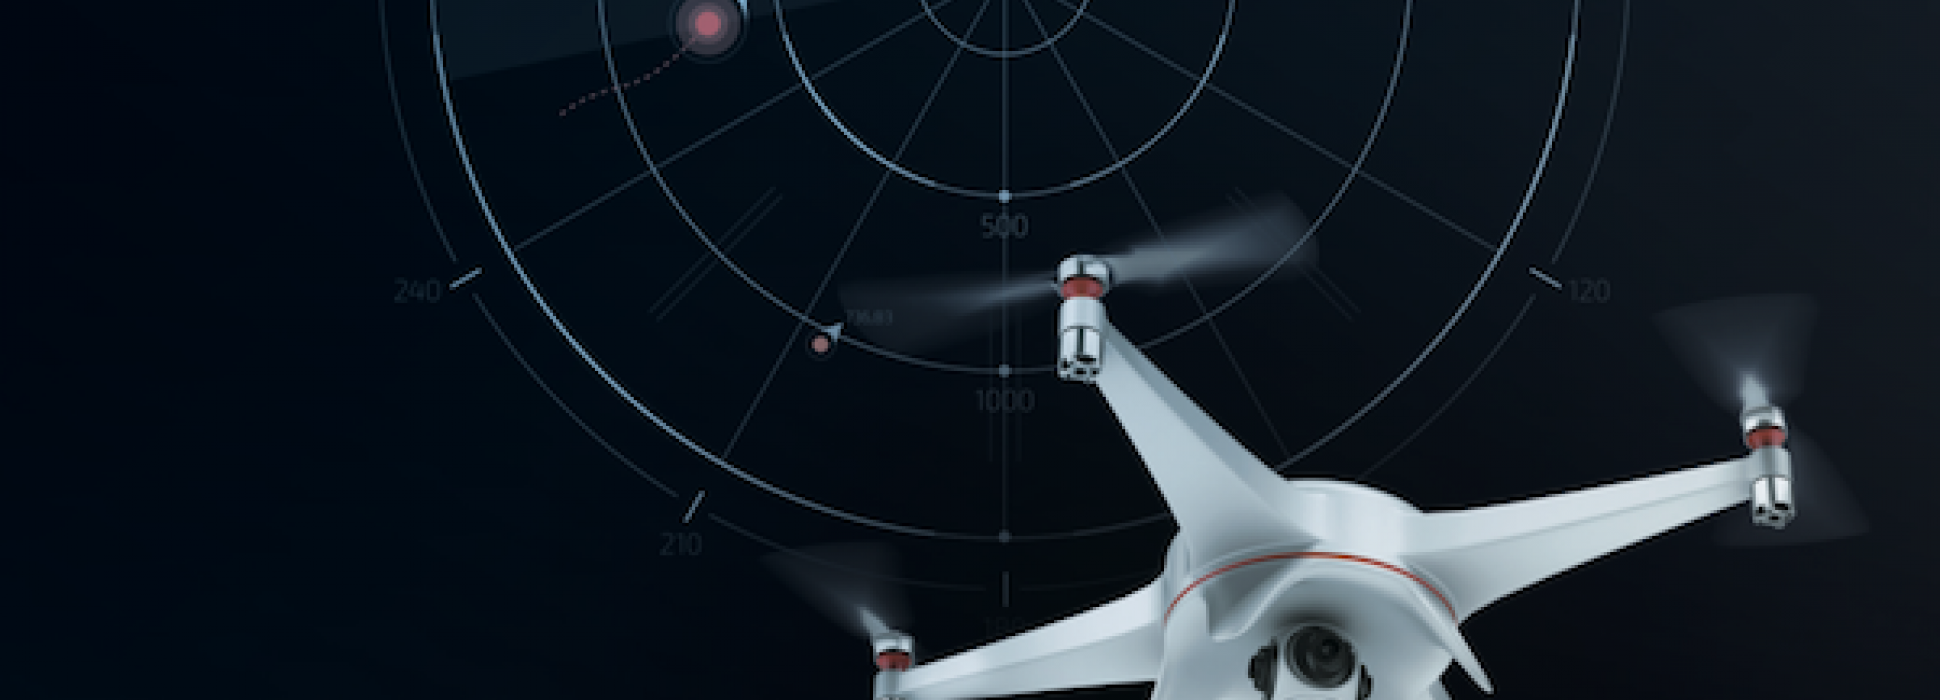 La pyme Drone XTR, con sede en Le Havre, firma un acuerdo con Thales